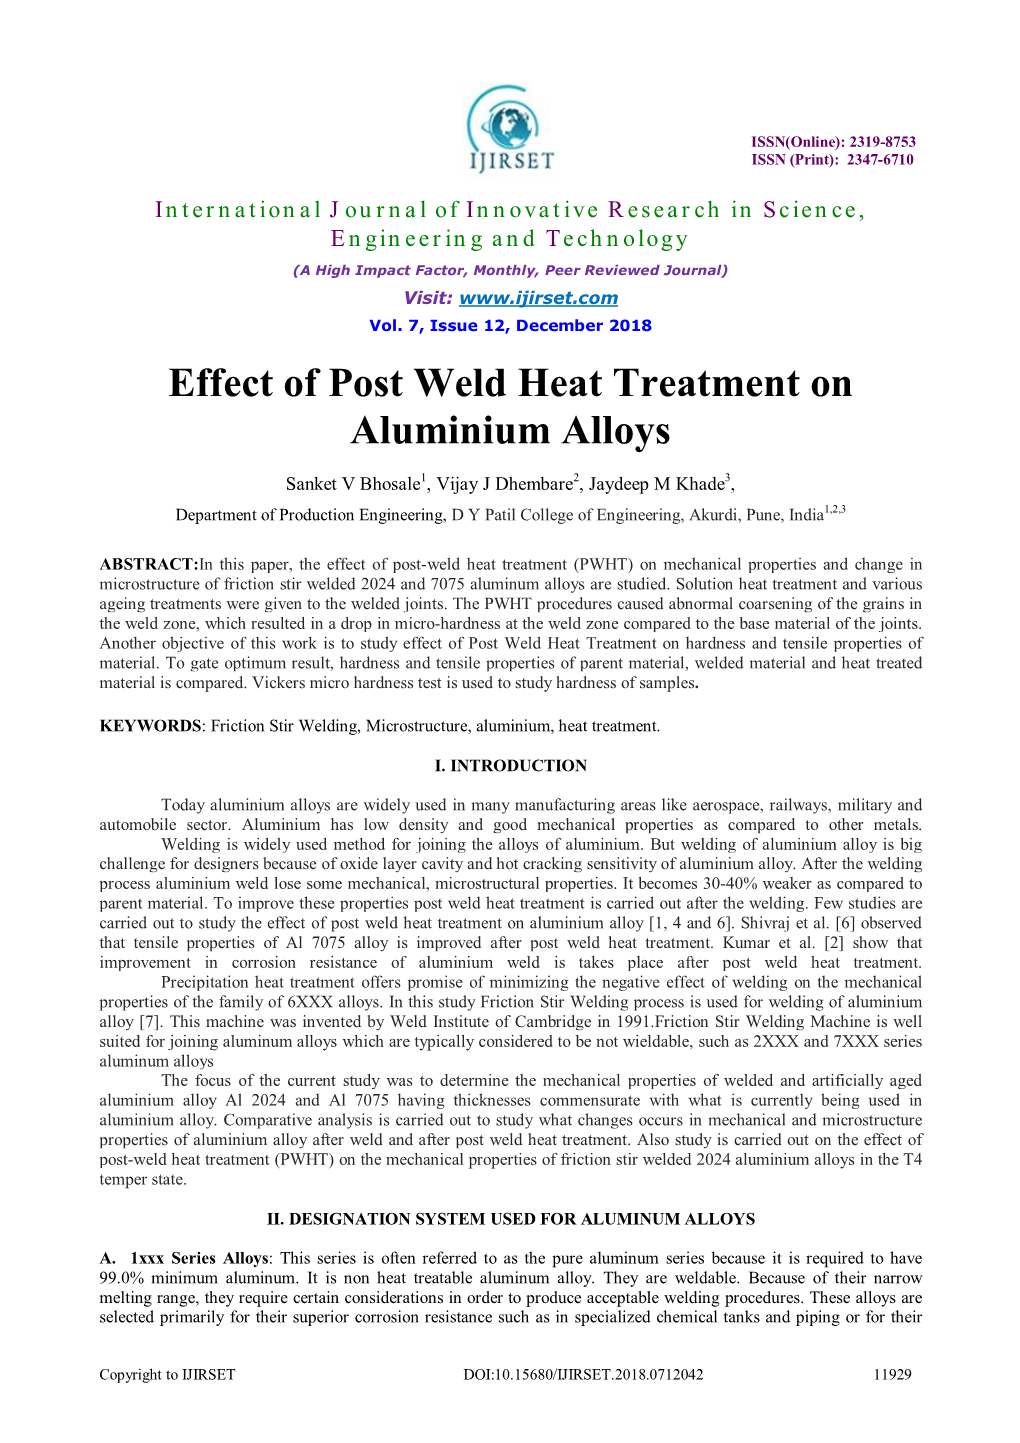 Effect of Post Weld Heat Treatment on Aluminium Alloys